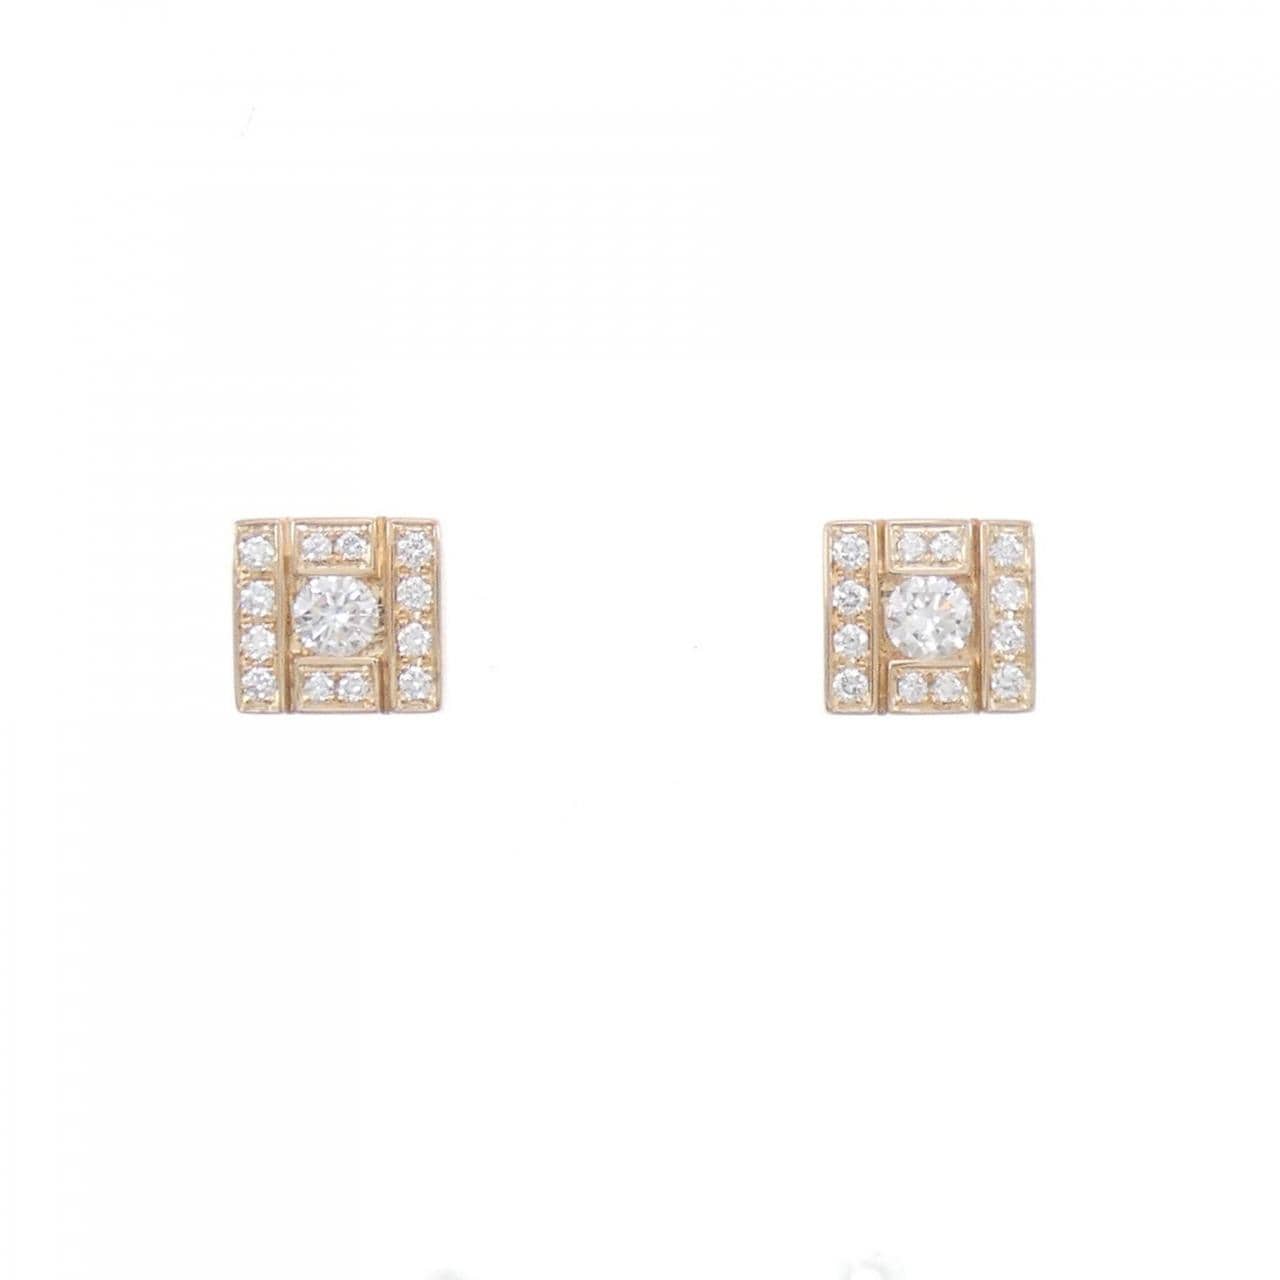 DAMIANI Belle Epoque earrings